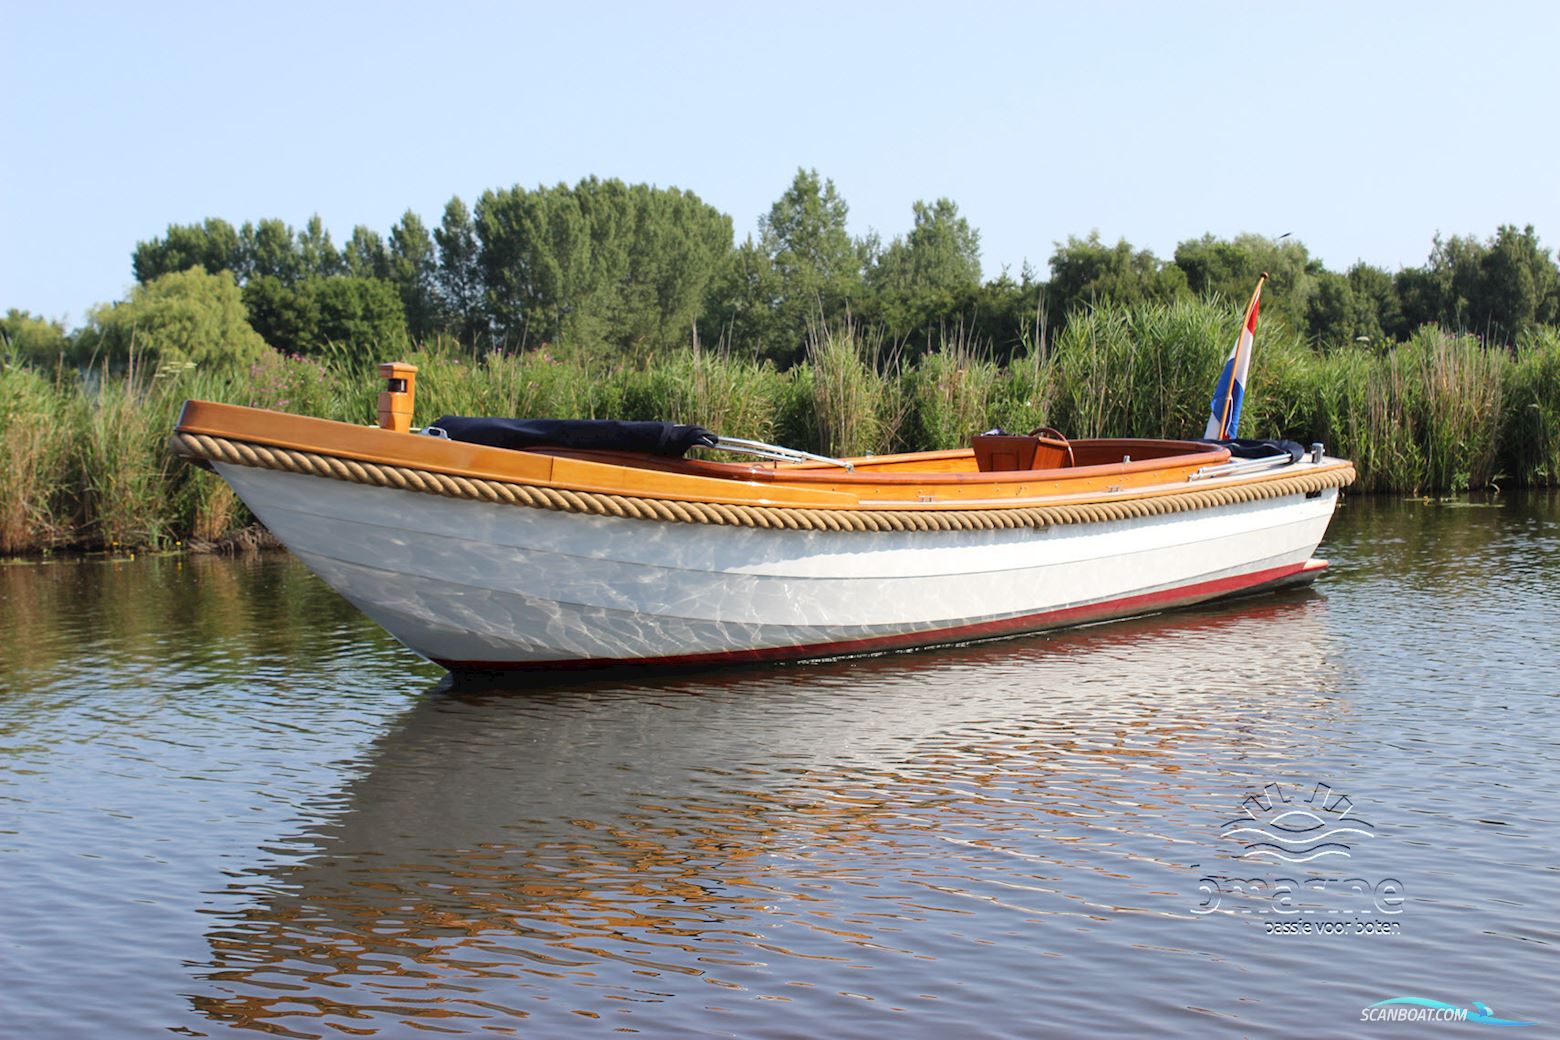 Roosemalen Vlet 770 Motorbåd 2008, med Lombardini motor, Holland